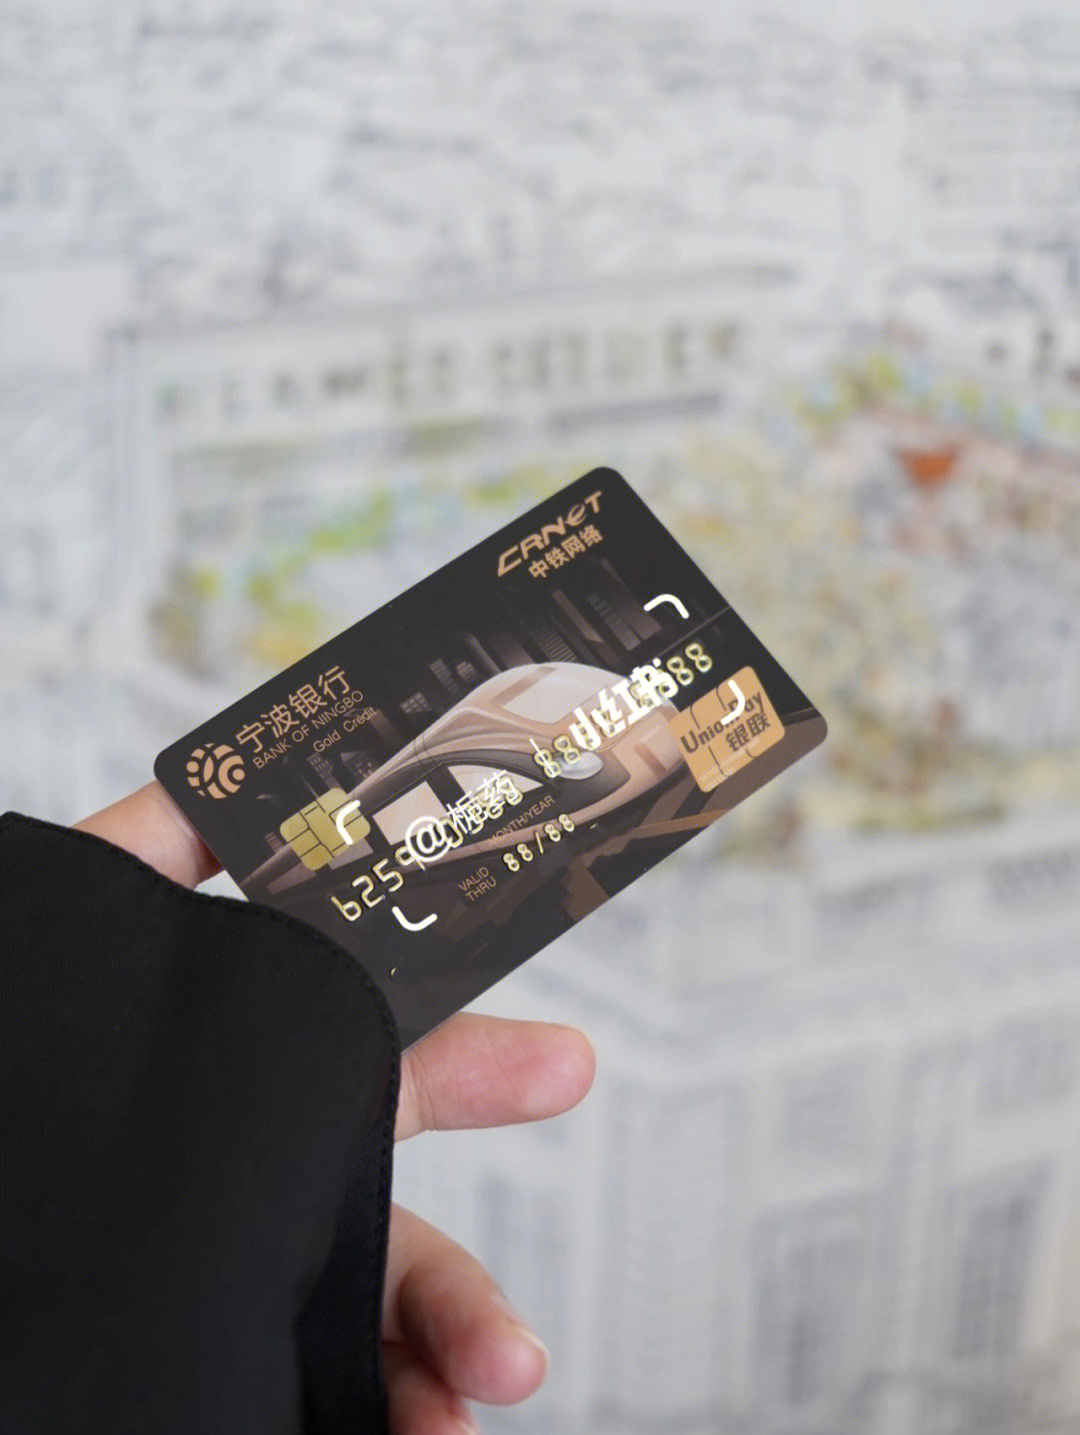 宁波银行借记卡种类图片